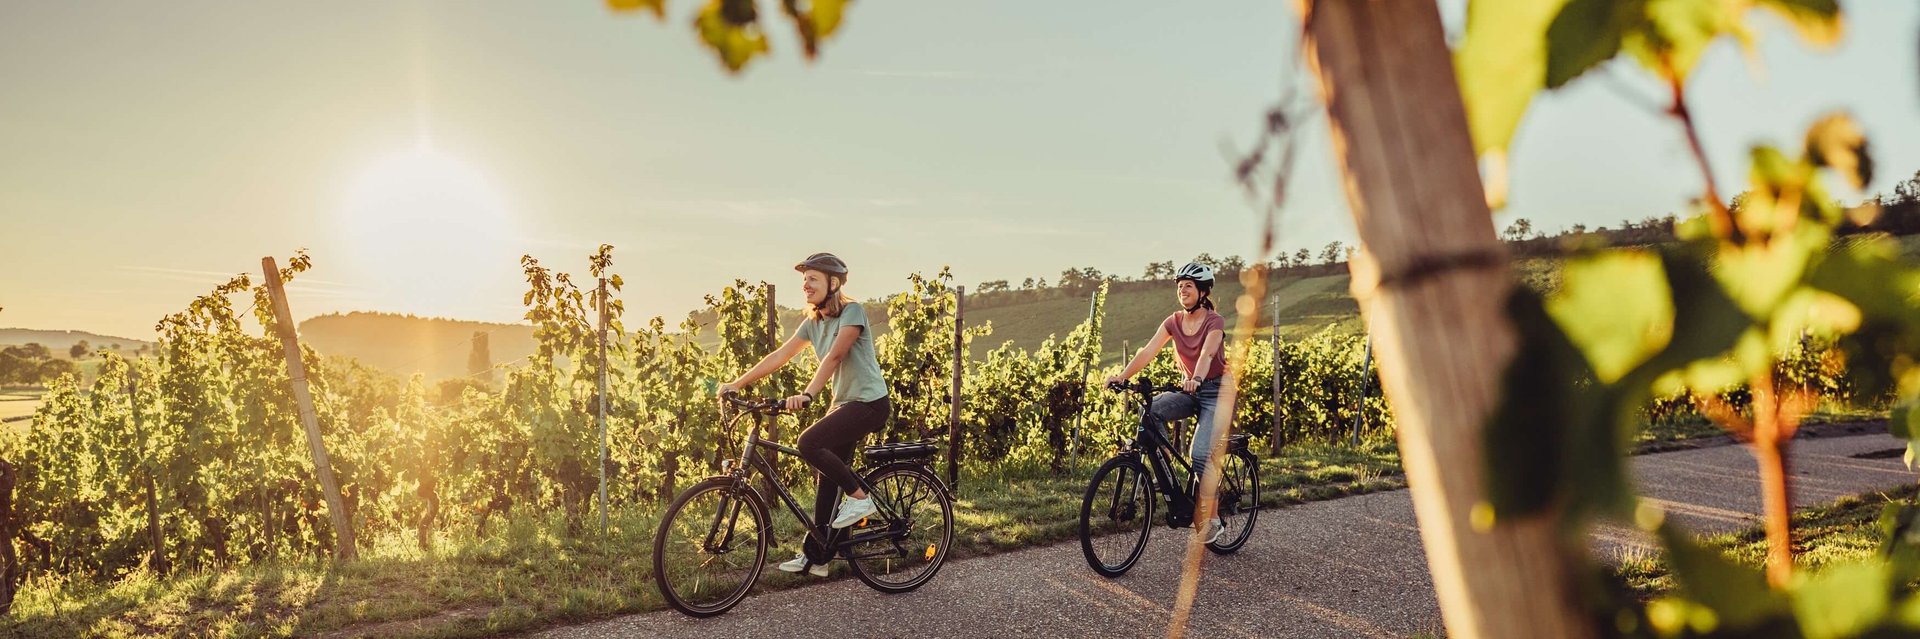 Weinradwege | Radtouren für Genießer